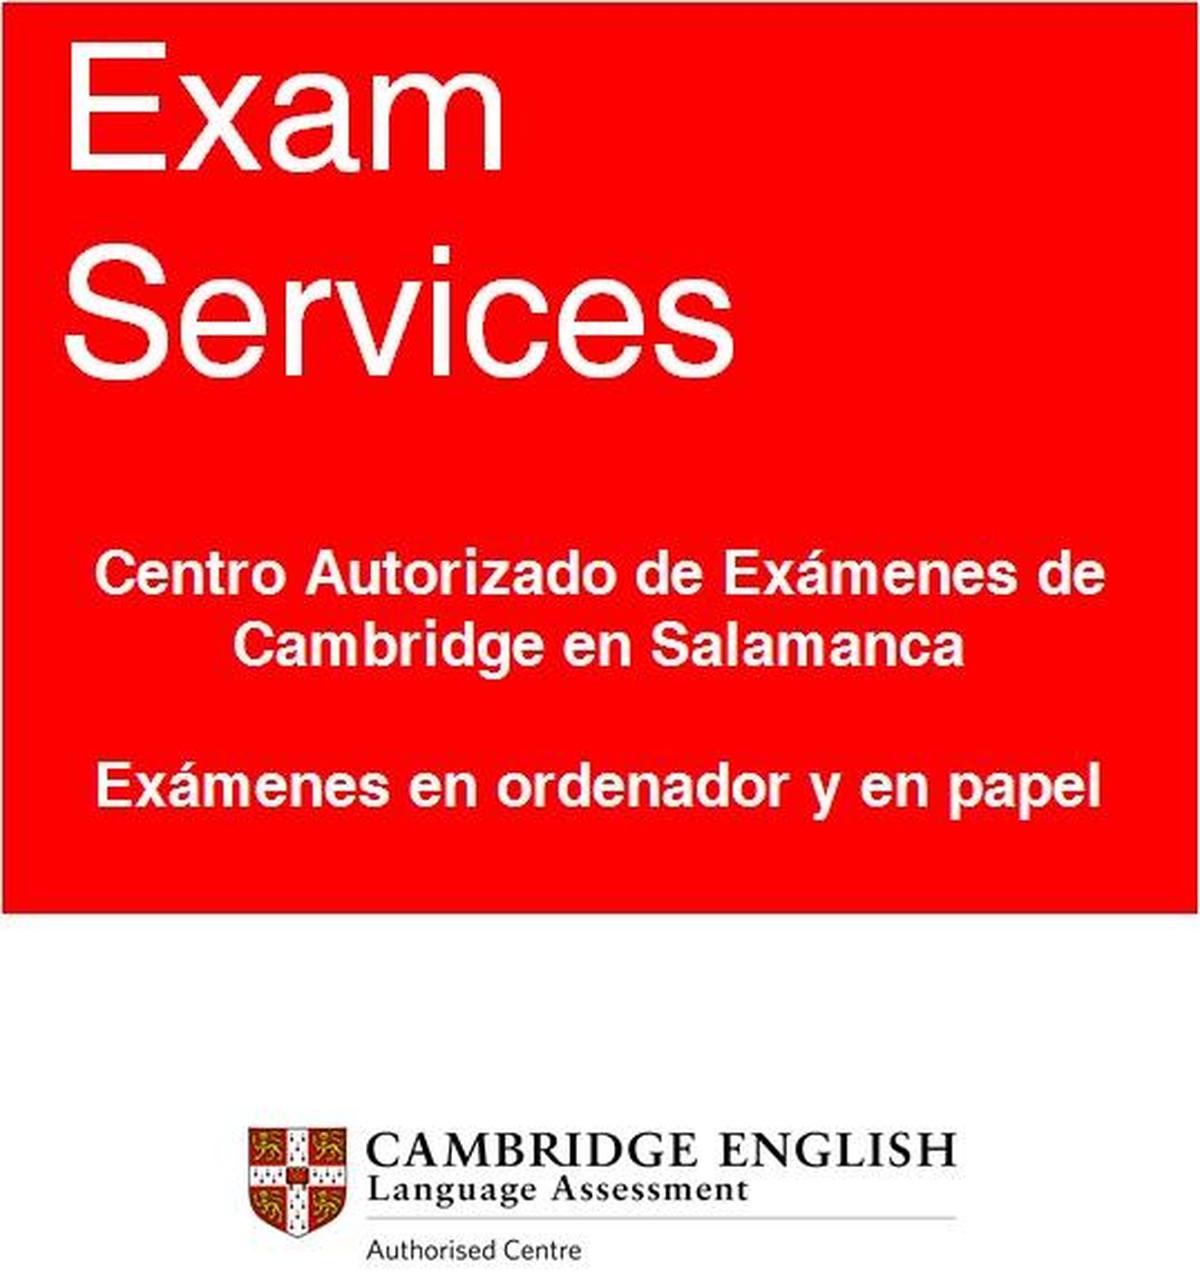 Centro Autorizado de Exámenes de Cambridge en Salamanca